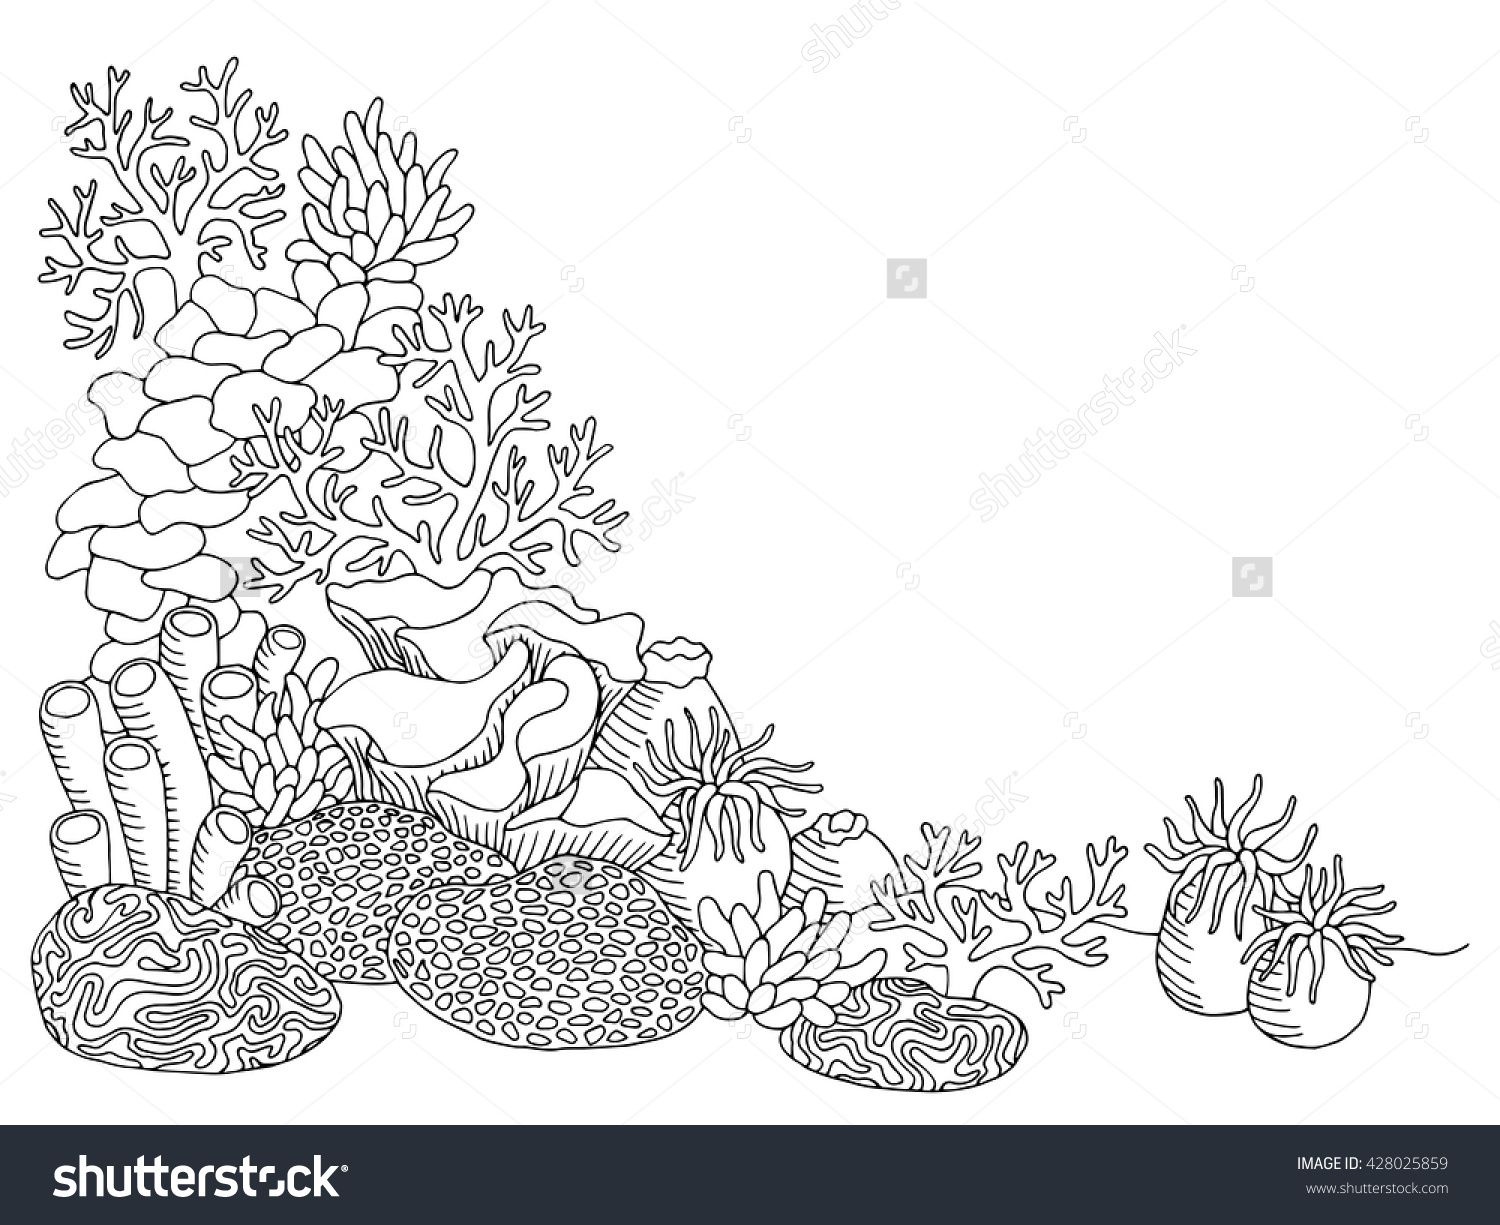 Coral sea graphic art black white underwater landscape